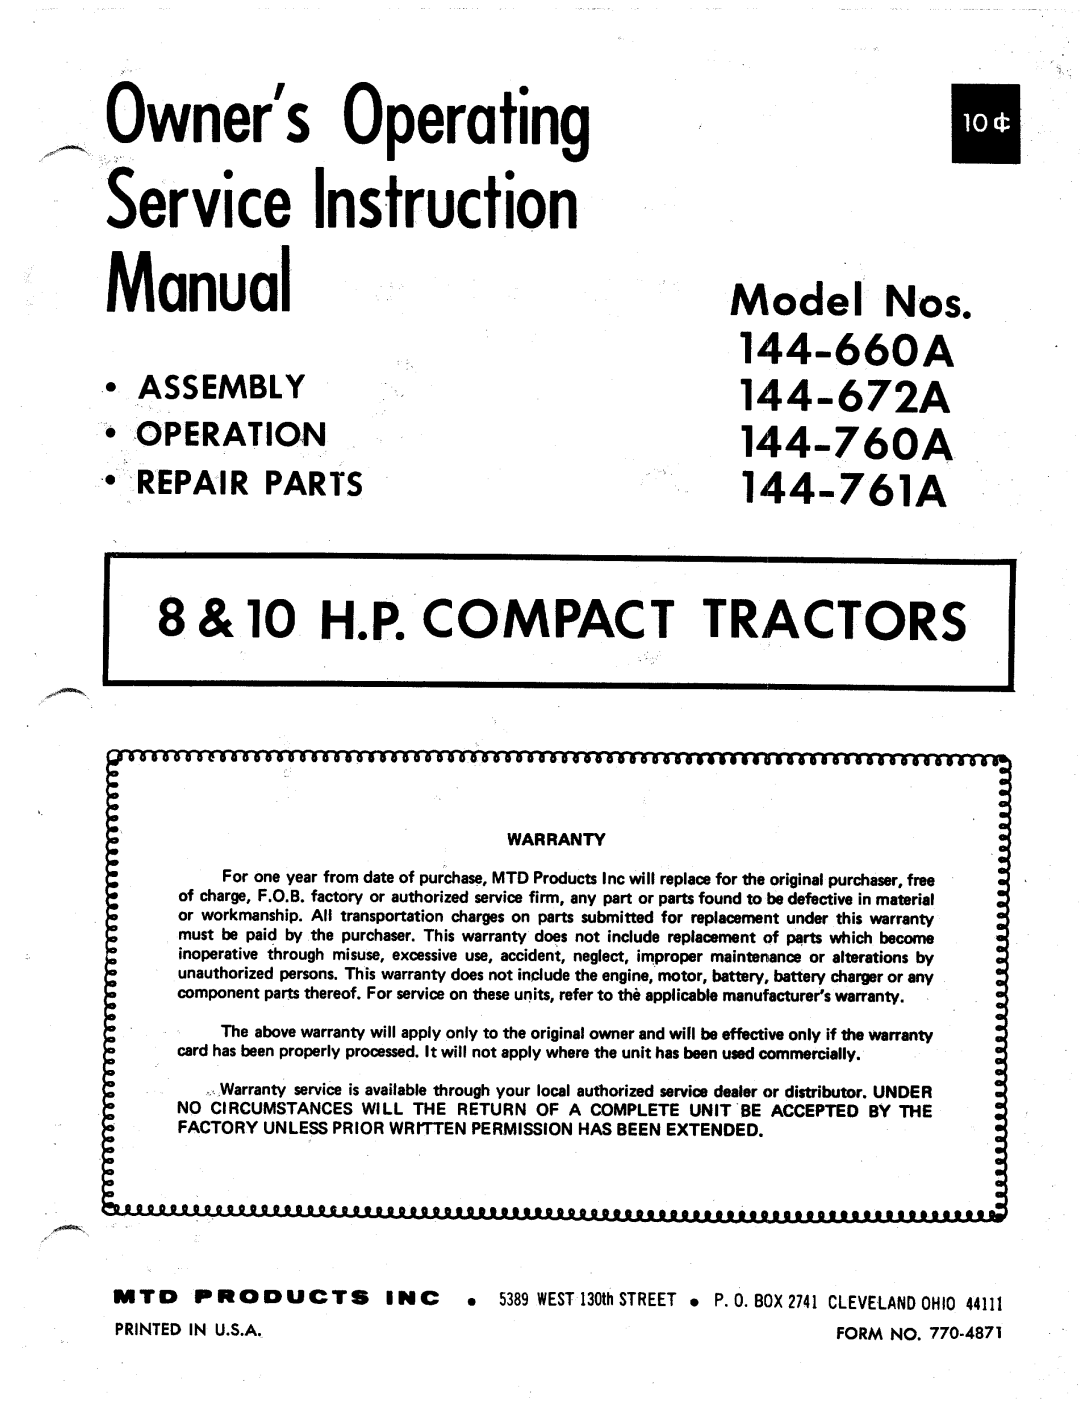 MTD 144-760A, 144-672A, 144-761A manual 